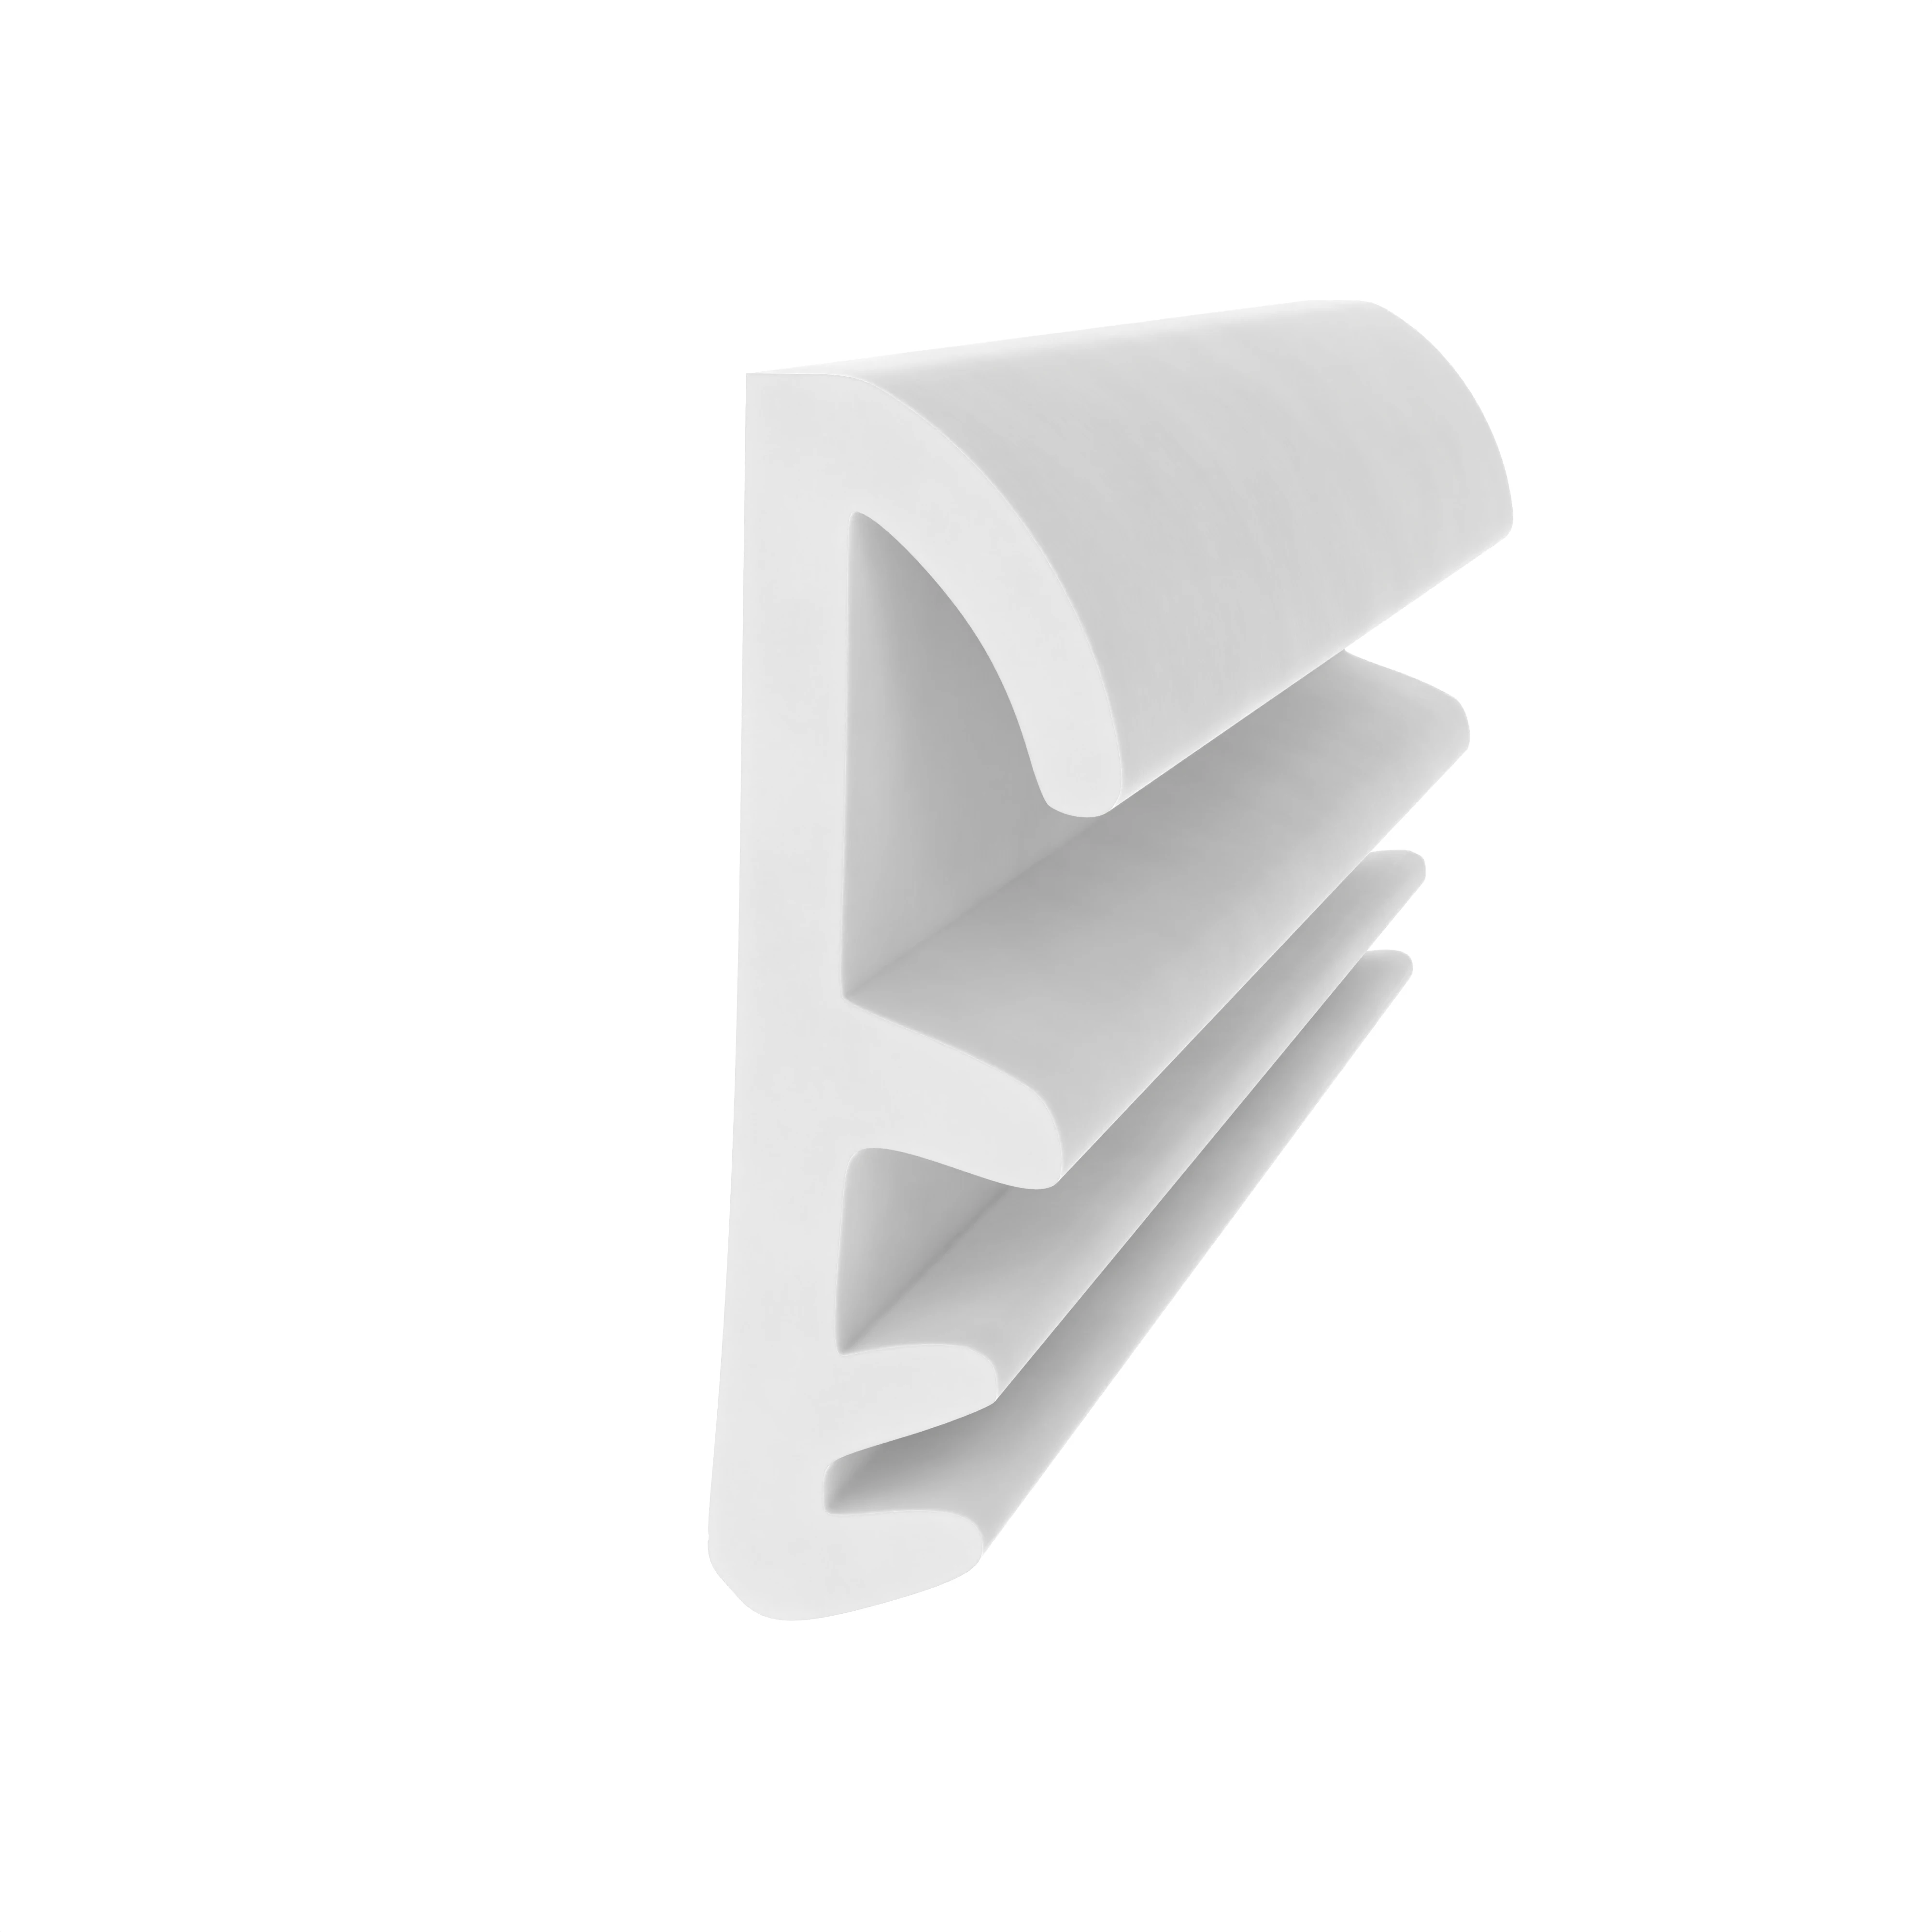 Flügelfalzdichtung für Holzflügel und -zargen | 9 mm Falzhöhe | Farbe: weiß